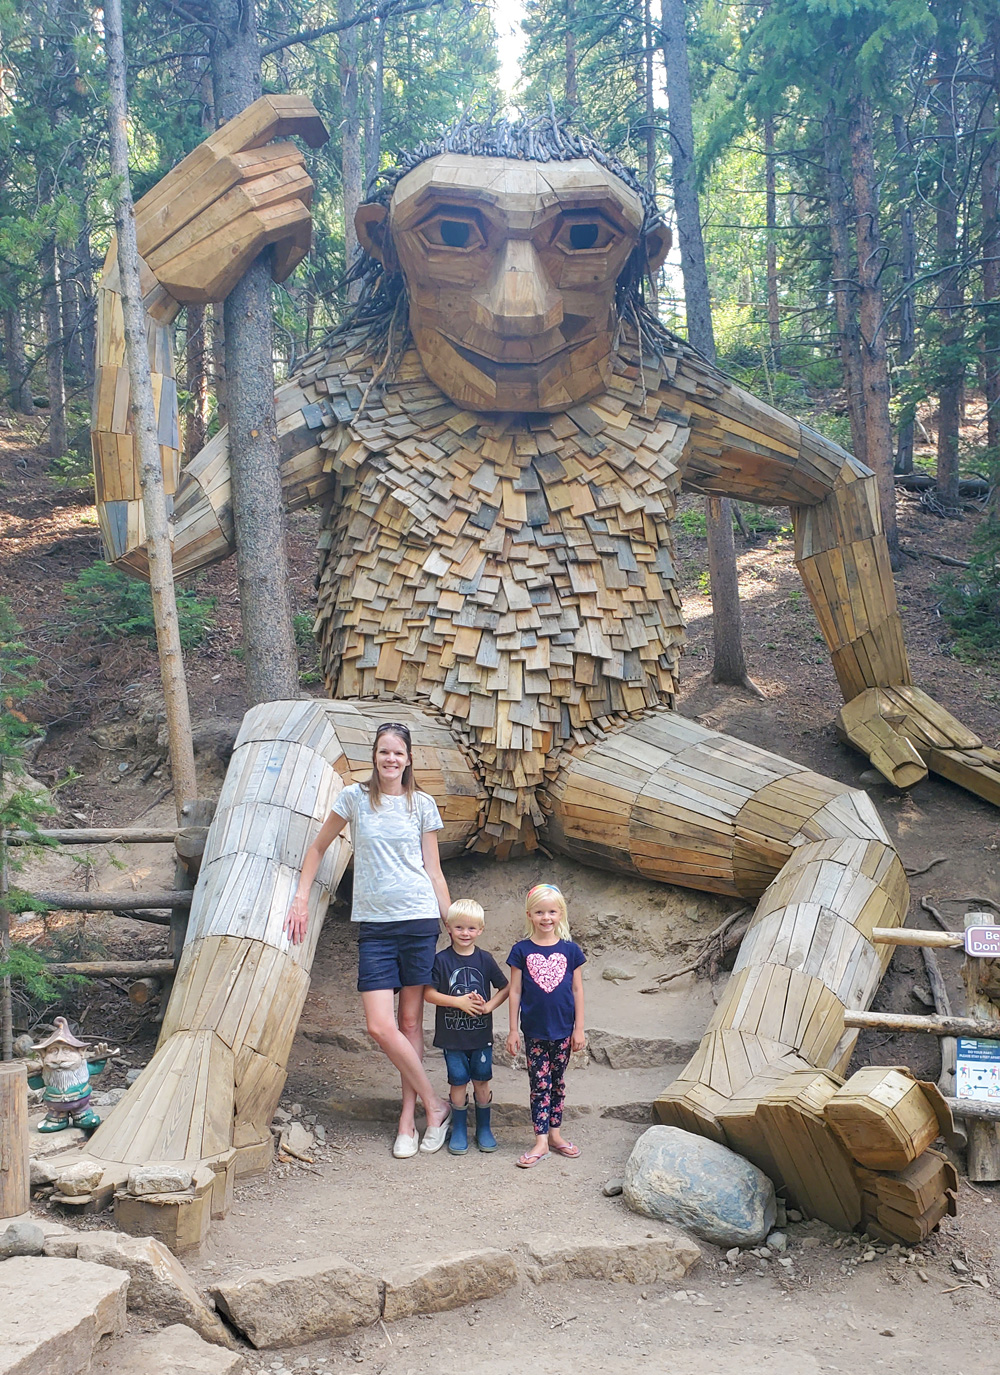 Isak Heartstone forest troll art in Breckenridge Colorado